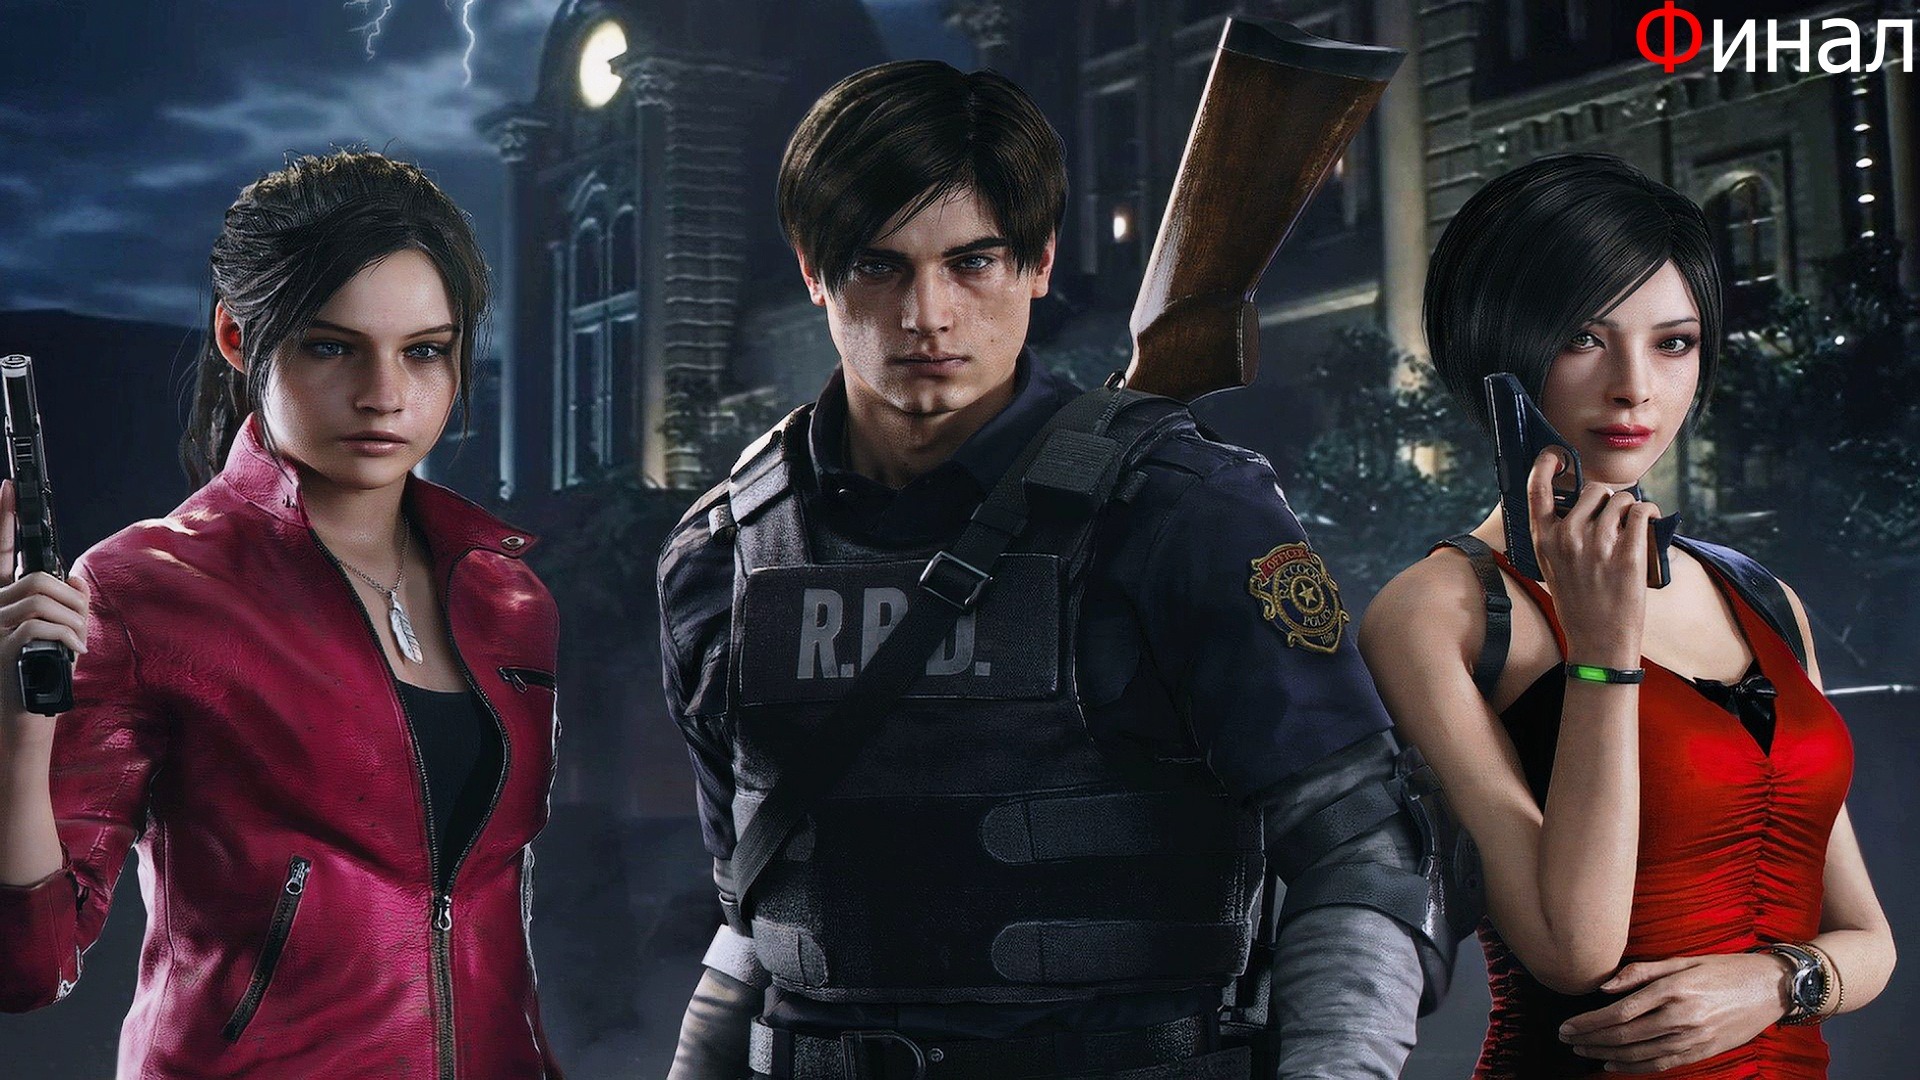 Resident Evil 2 Remake Обзор и Прохождение на Русском Финал |Обитель Зла 2 Ремейк|Walkthrough|Стрим